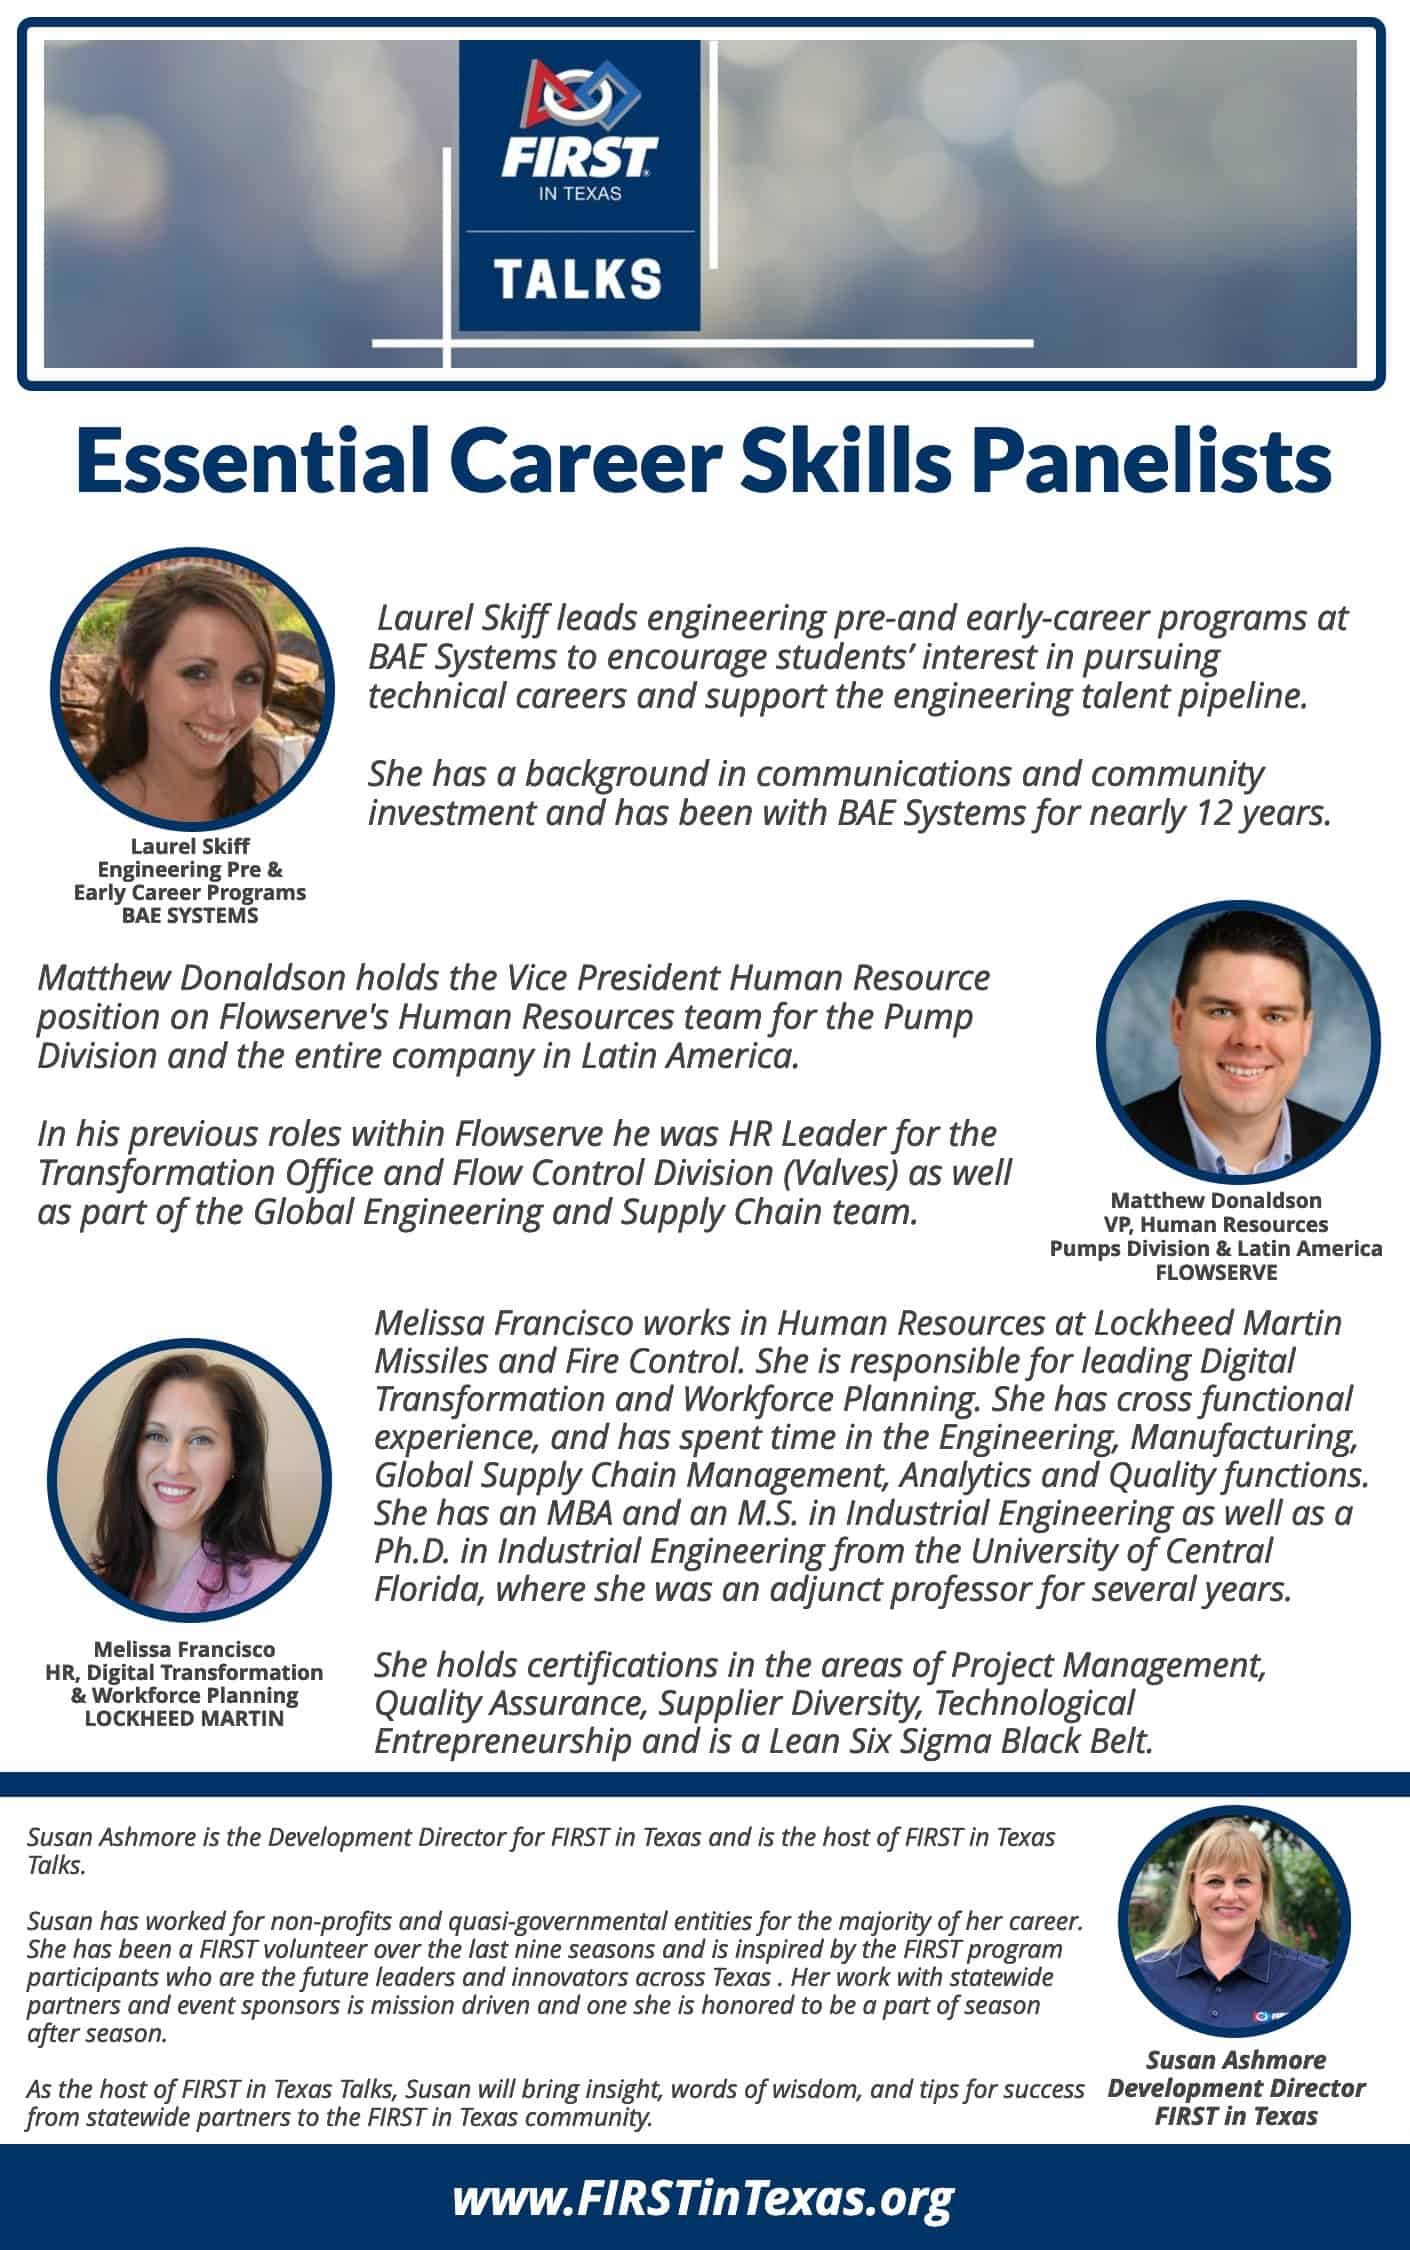 Essential Career Skills - FIRST in Texas Talks Panelist Program